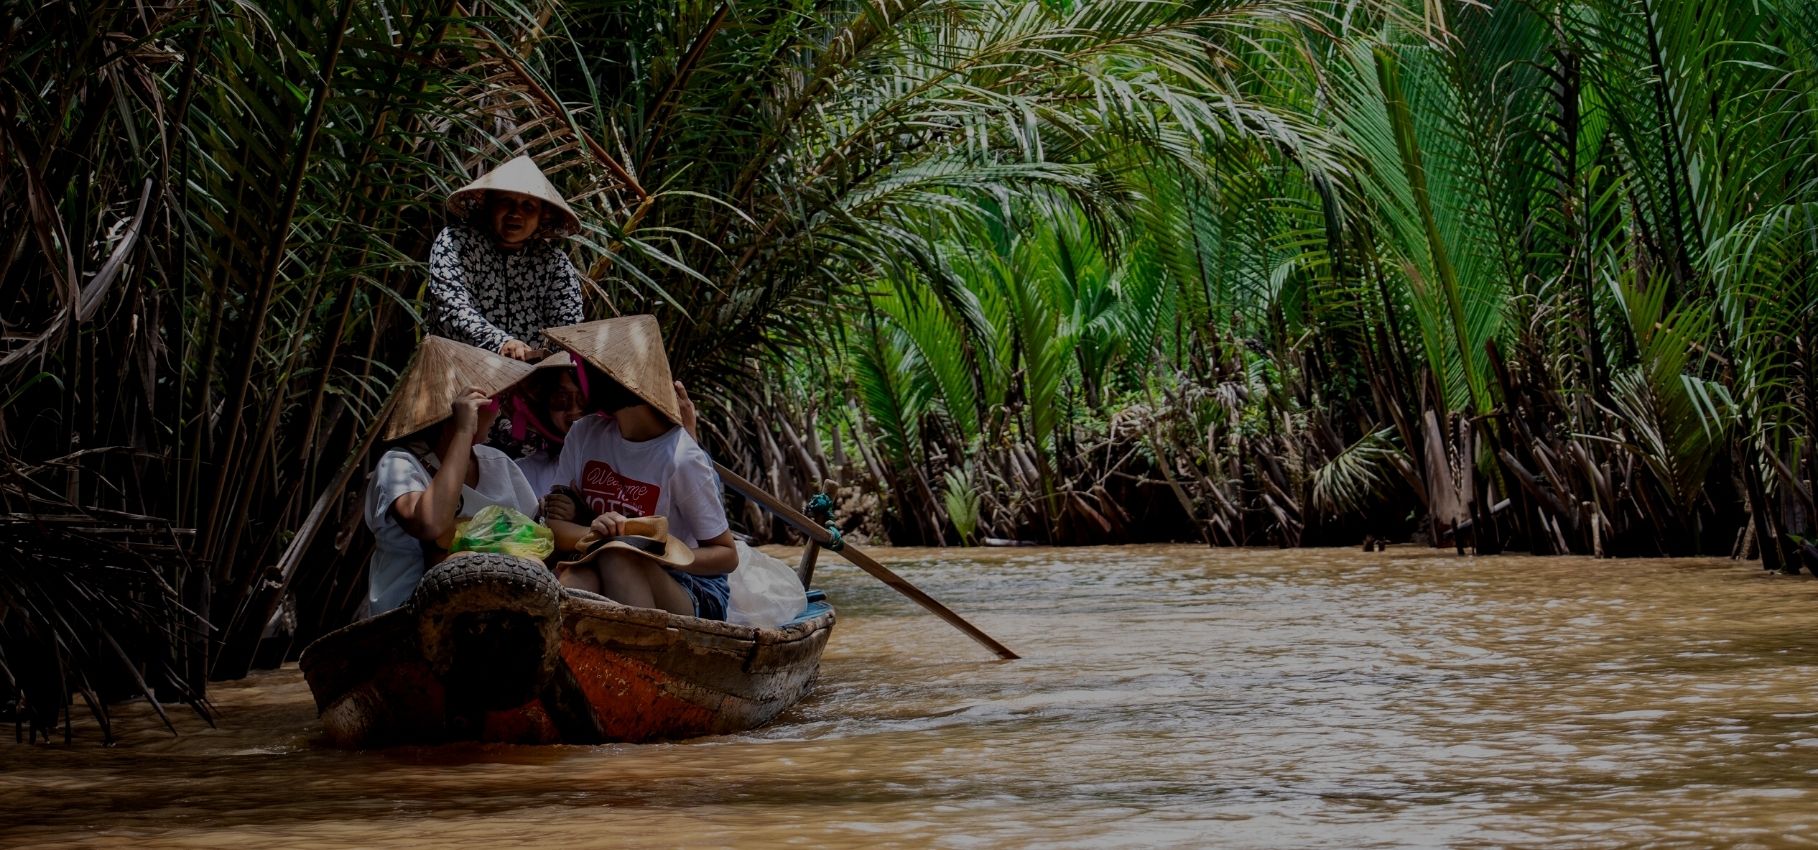 How to visit Mekong Delta, Vietnam